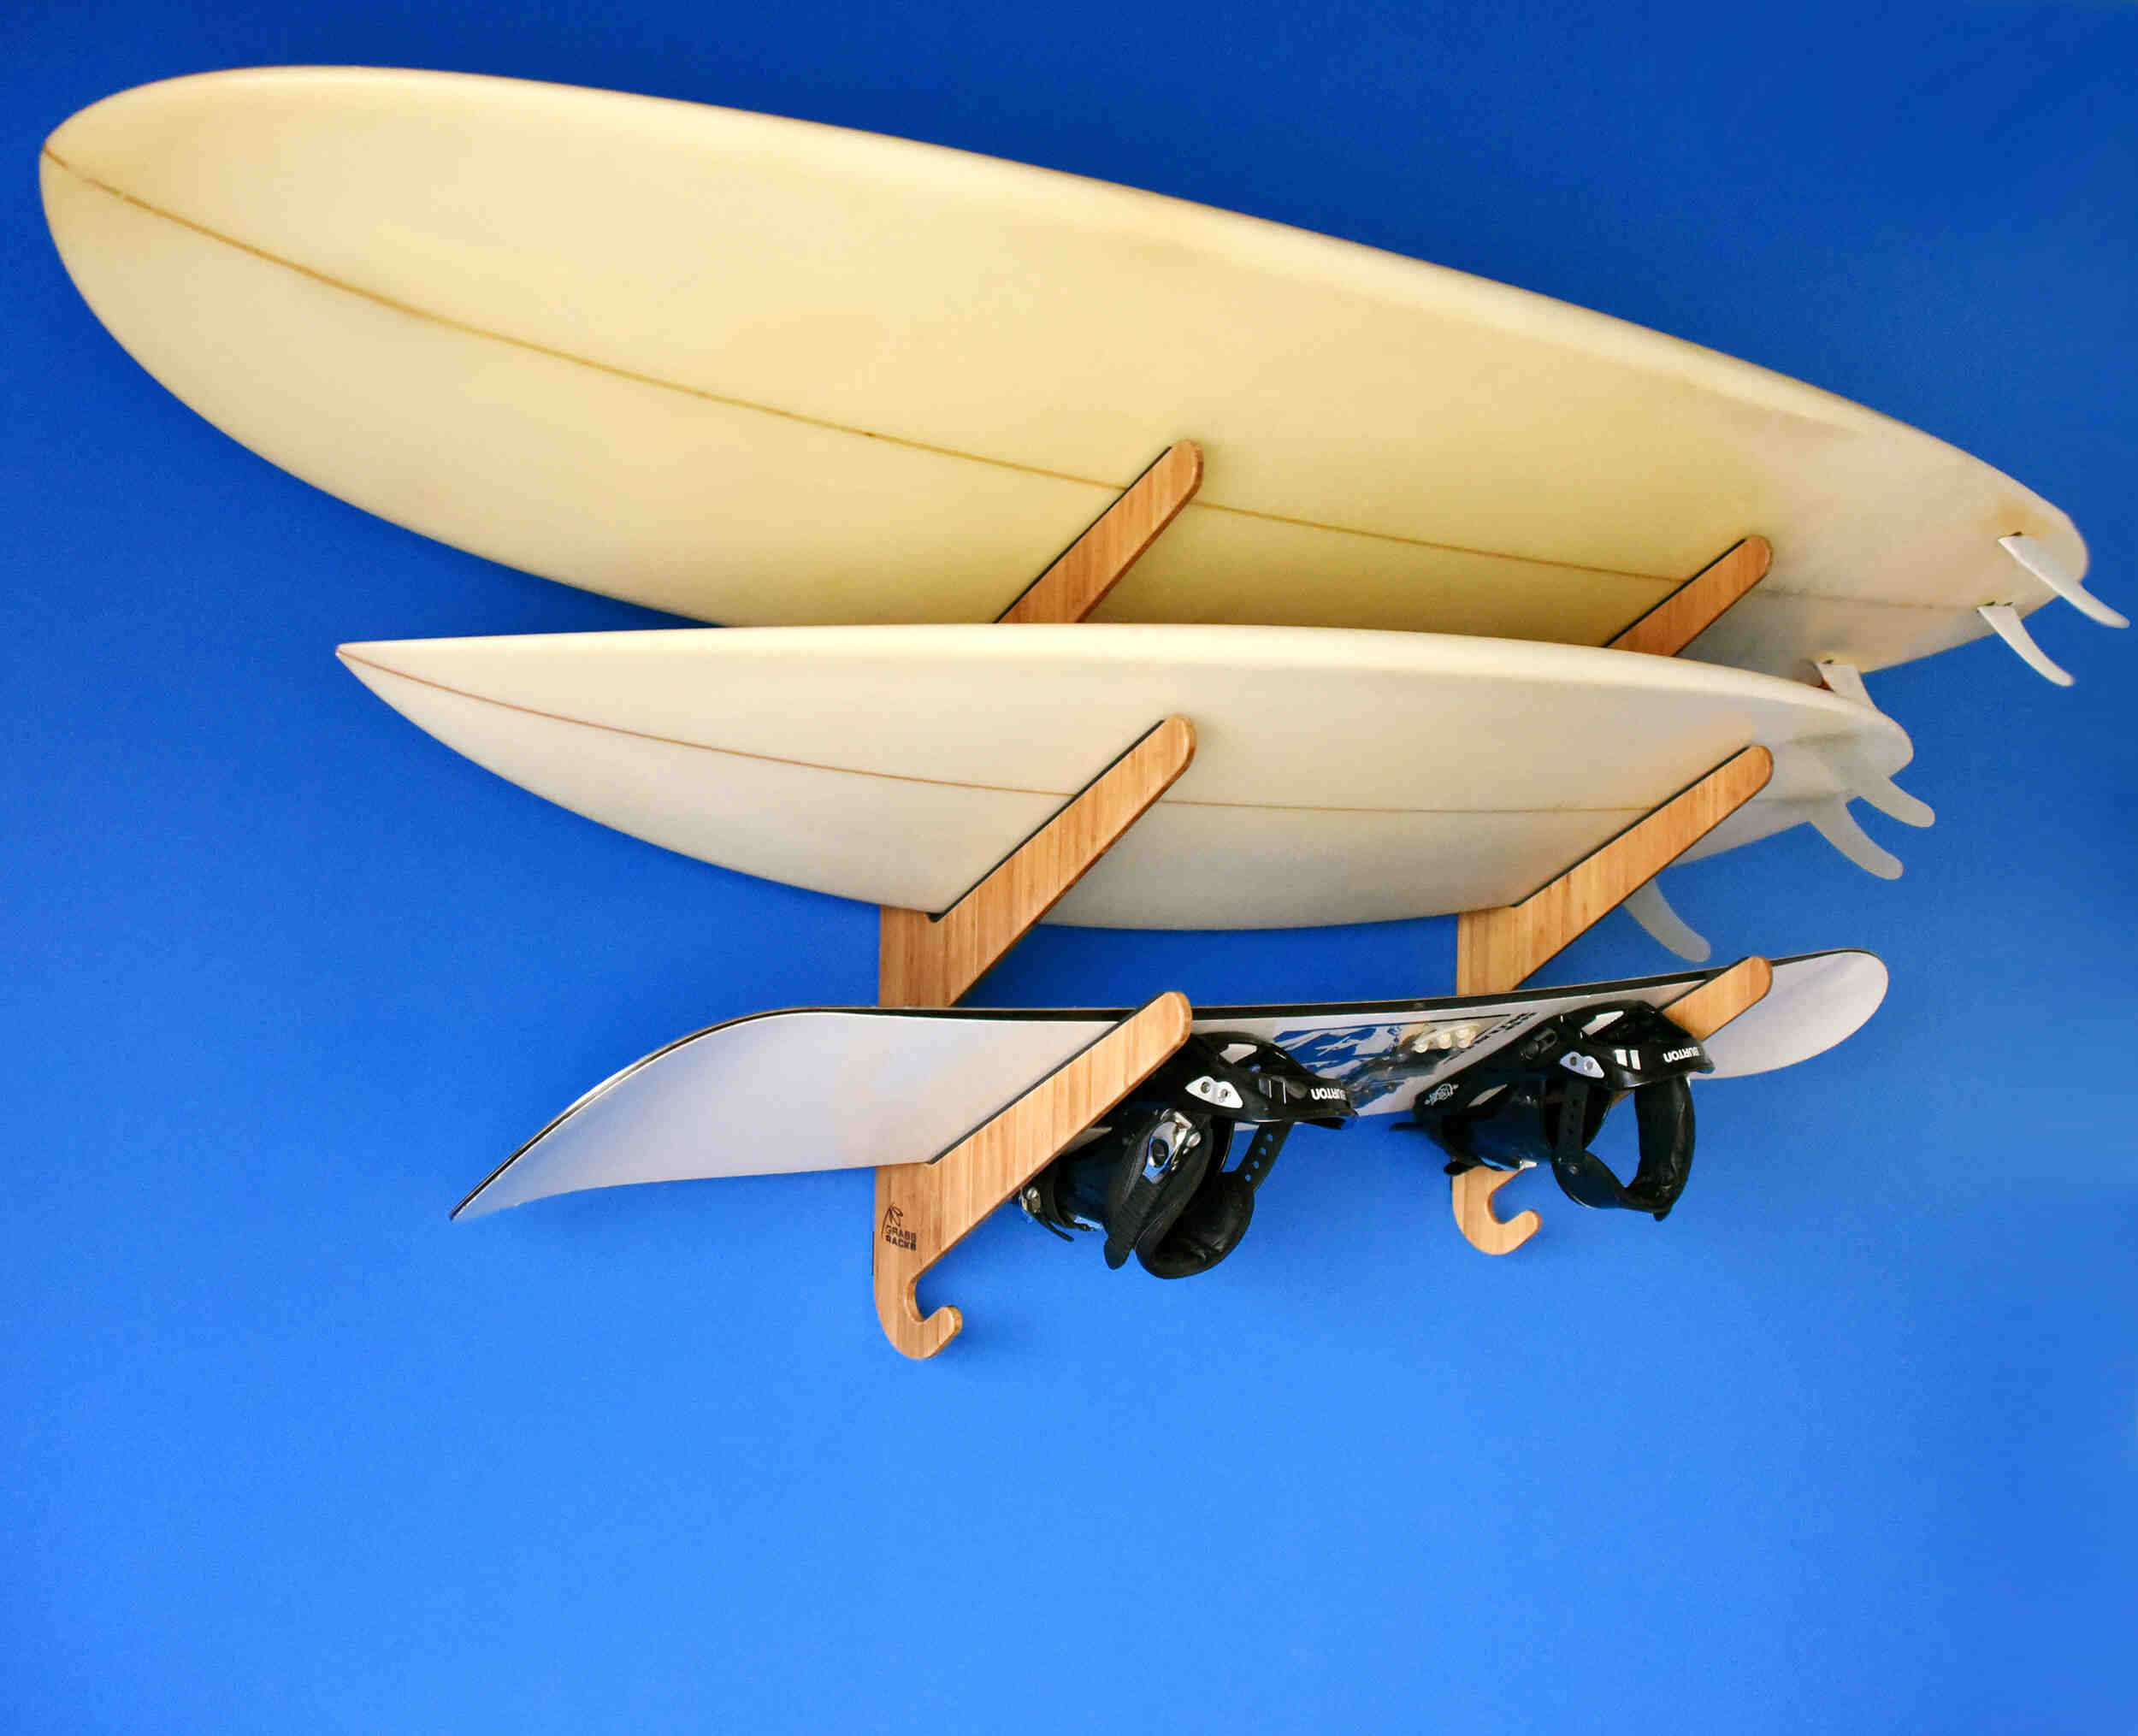 Comment surfer une short board ?